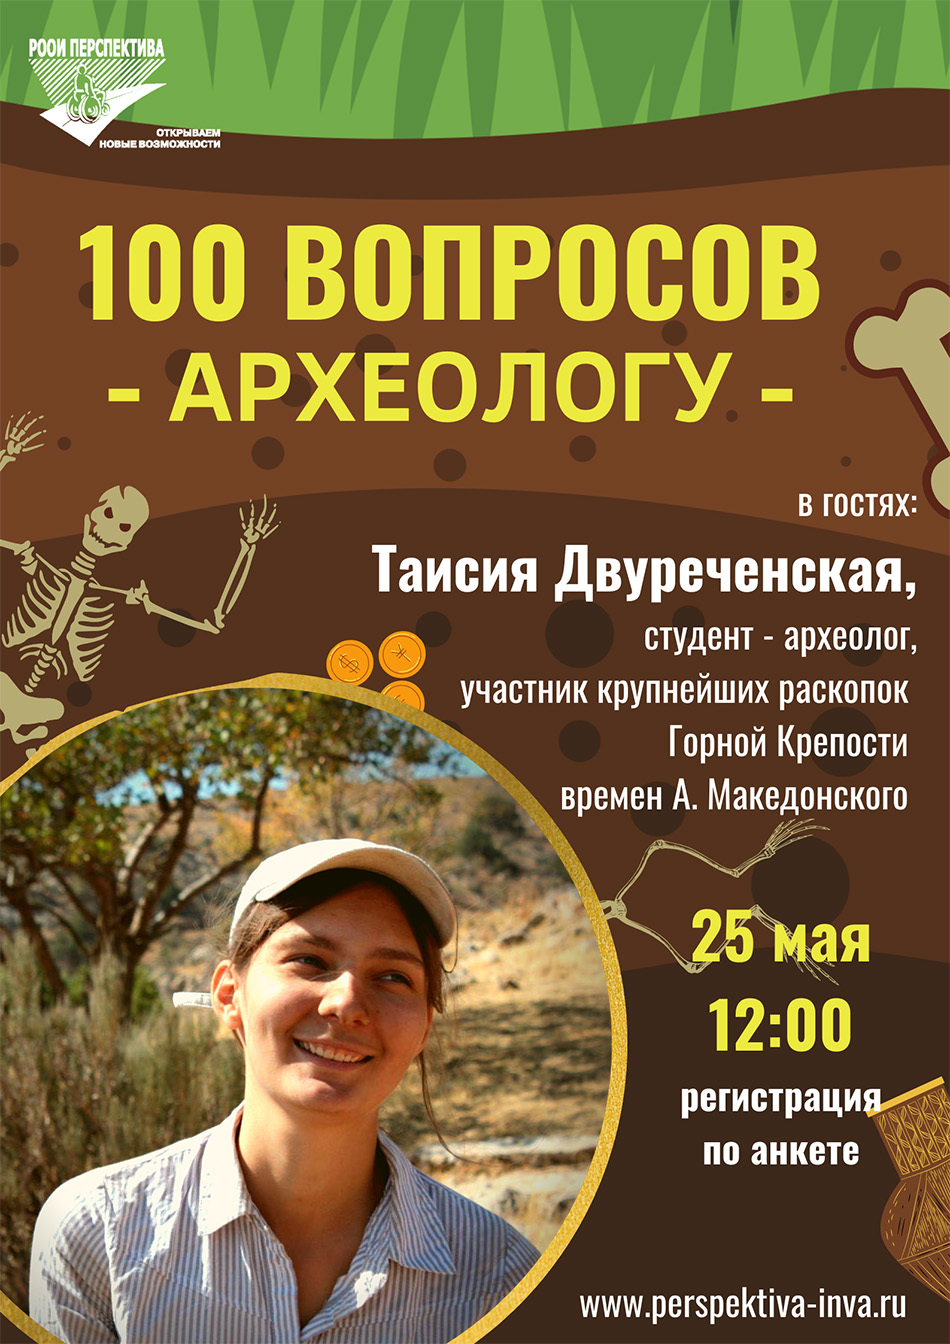 «100 вопросов профессионалу»: отвечает археолог Таисия Двуреченская